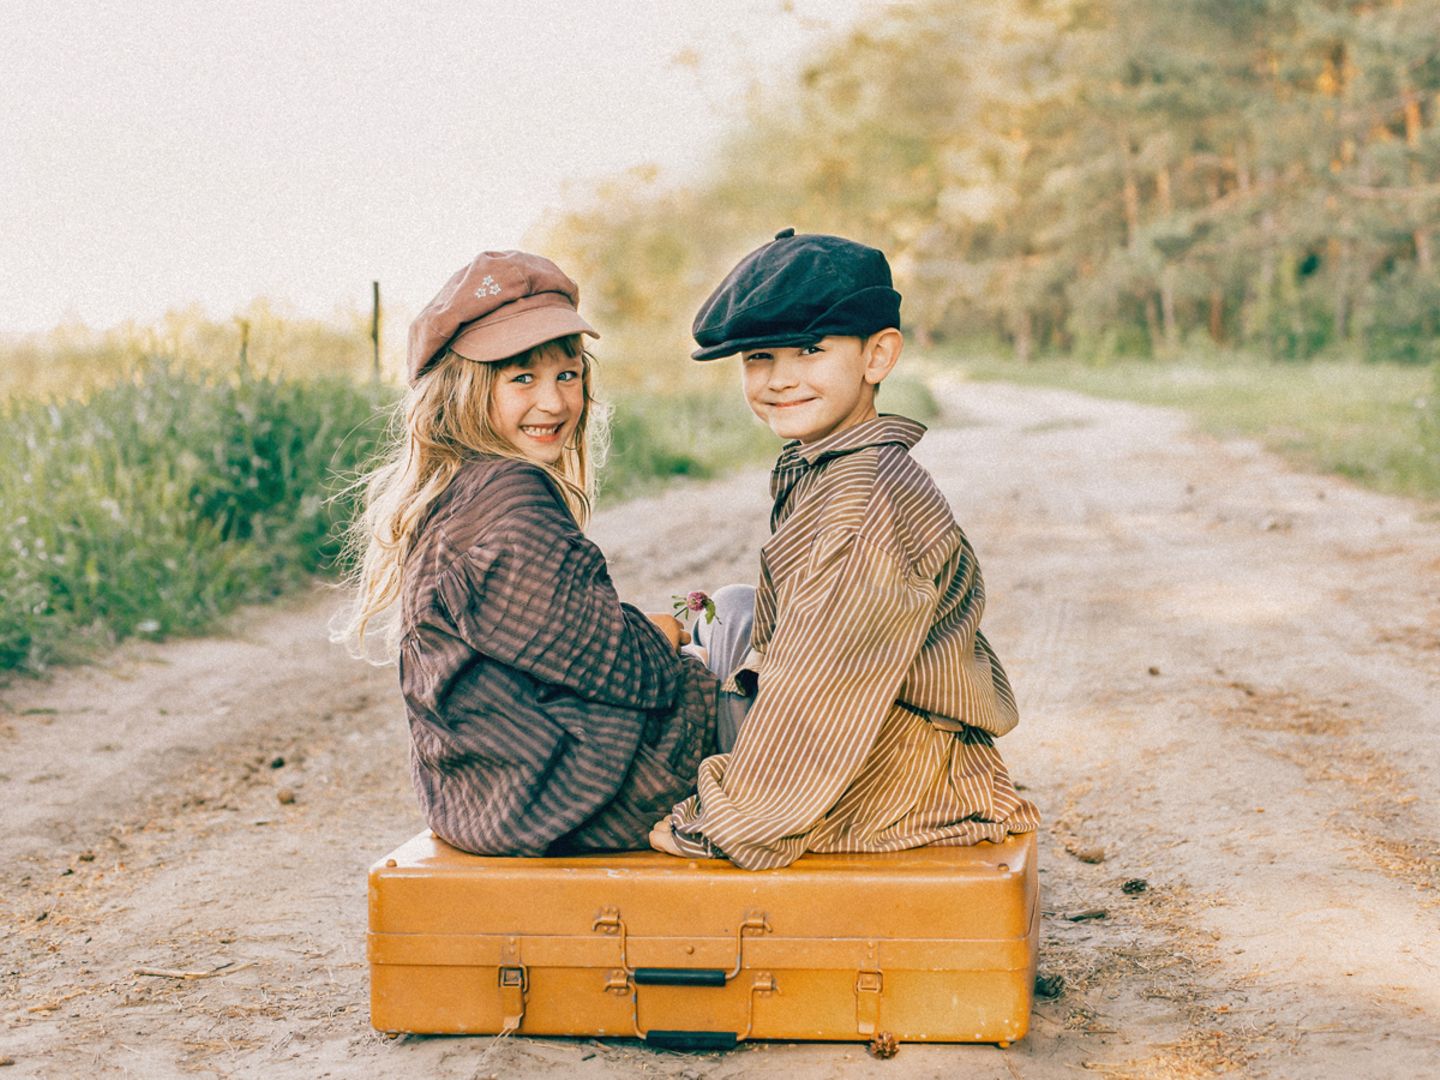 deutsche Jungennamen: Junge und Mädchen auf Koffer sitzend